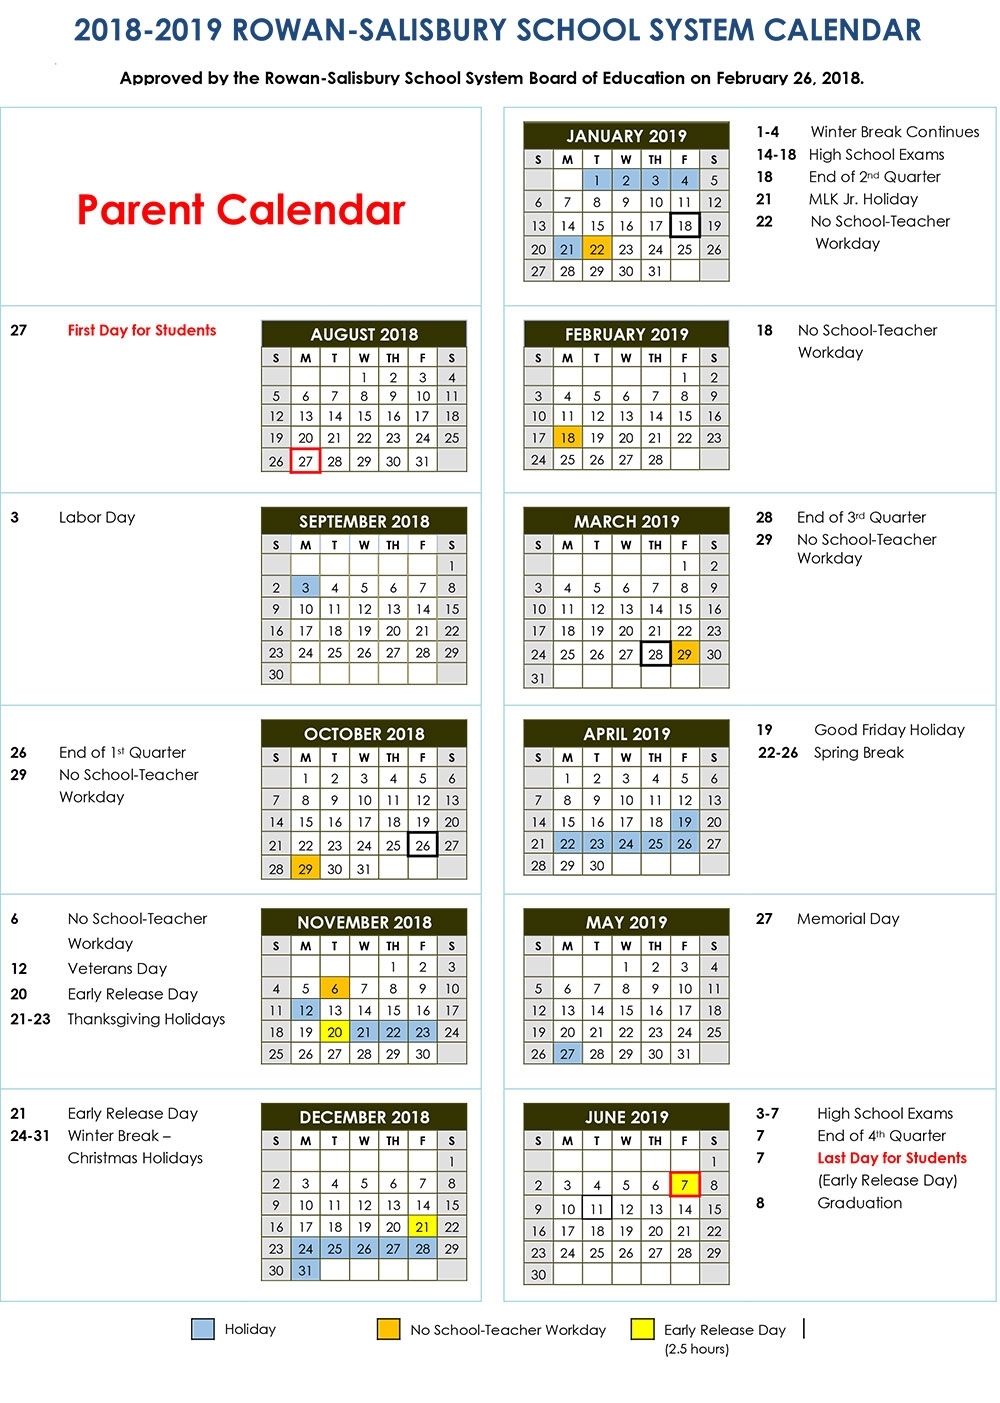 2018-2019 Calendars | District News District 7 School Calendar